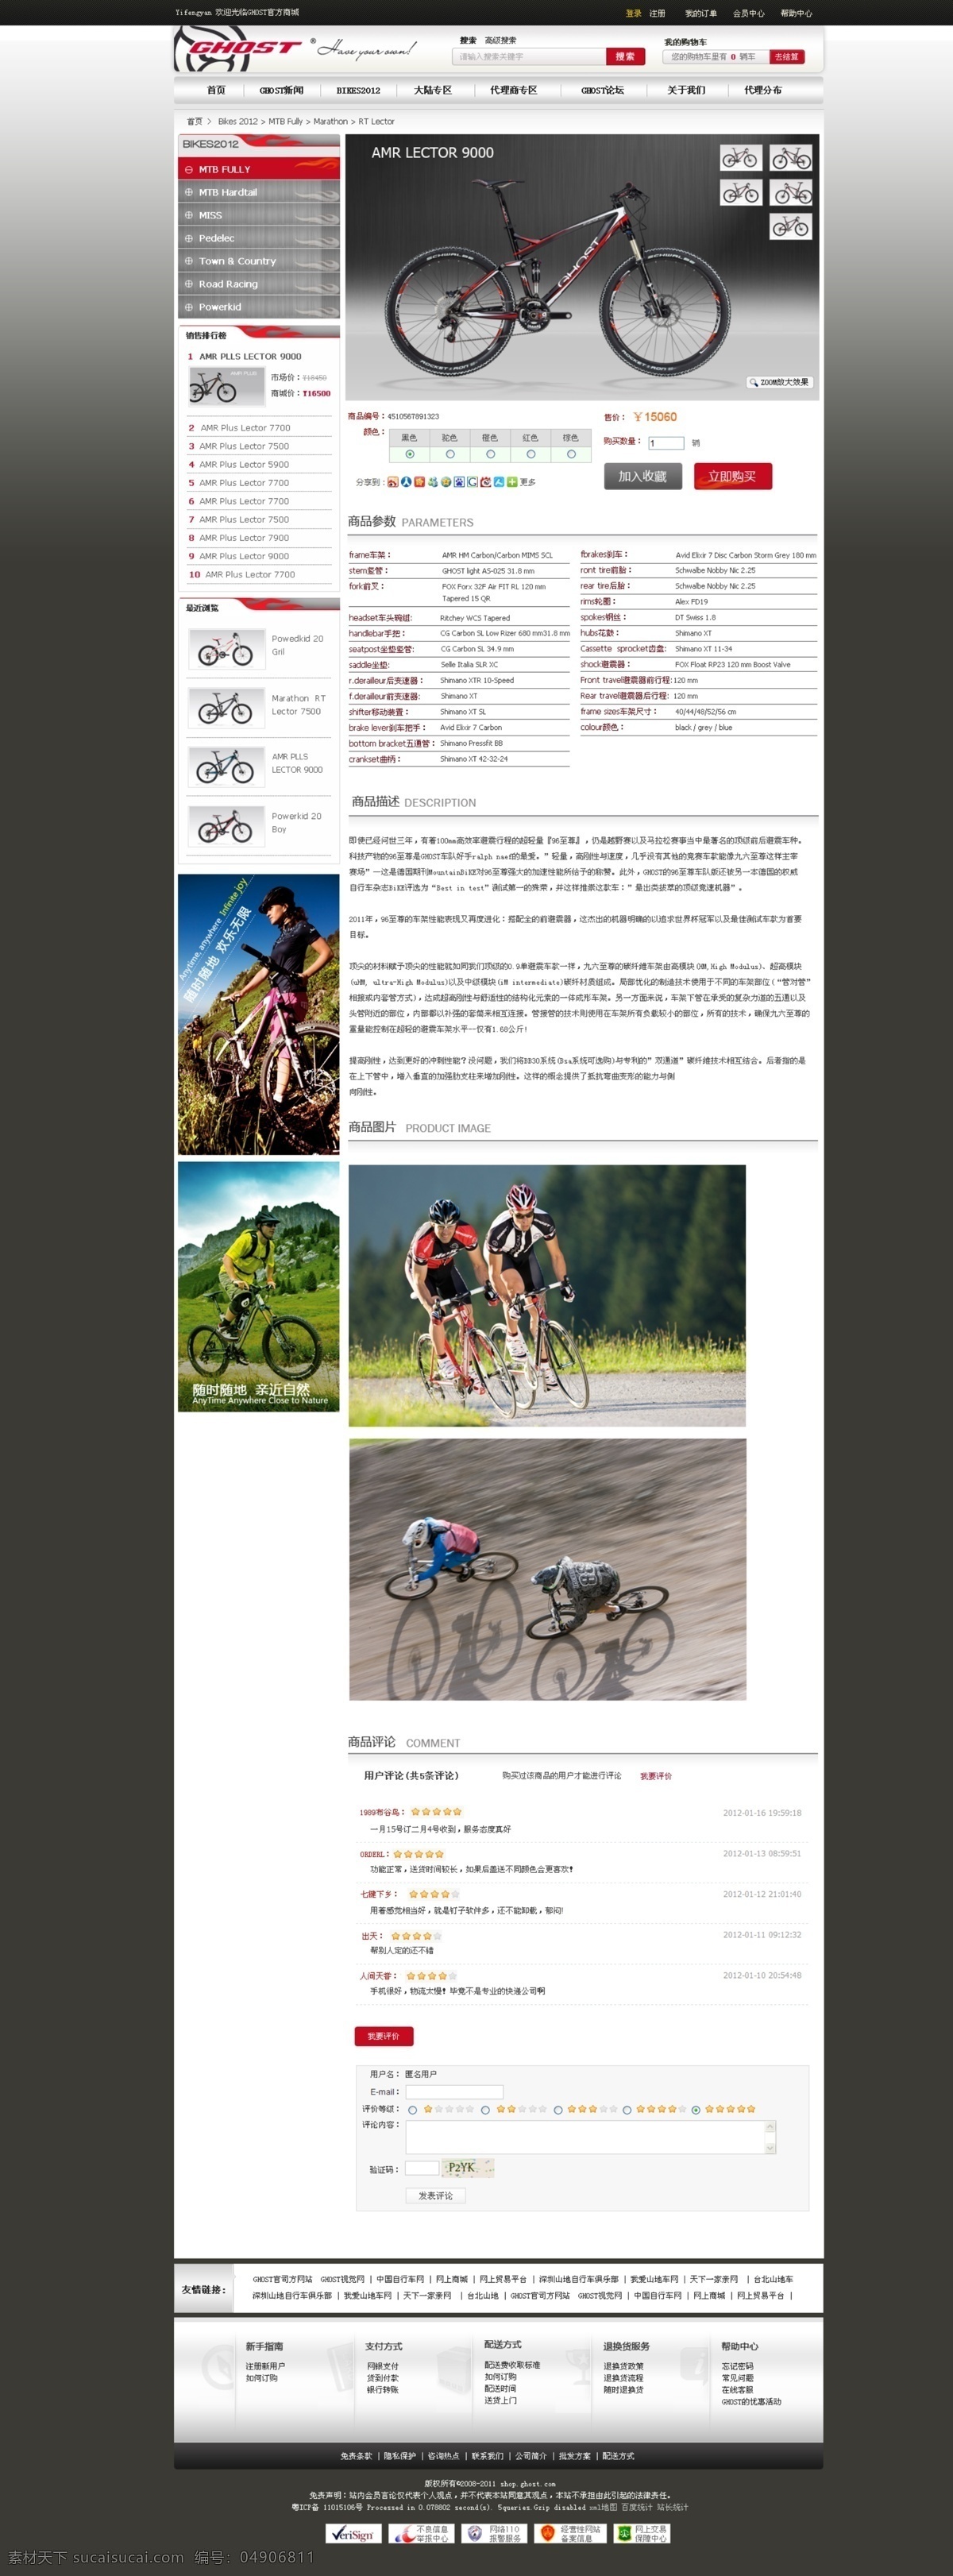 德国 品牌 ghost 山地 自行车 山地自行车 详情页 白色